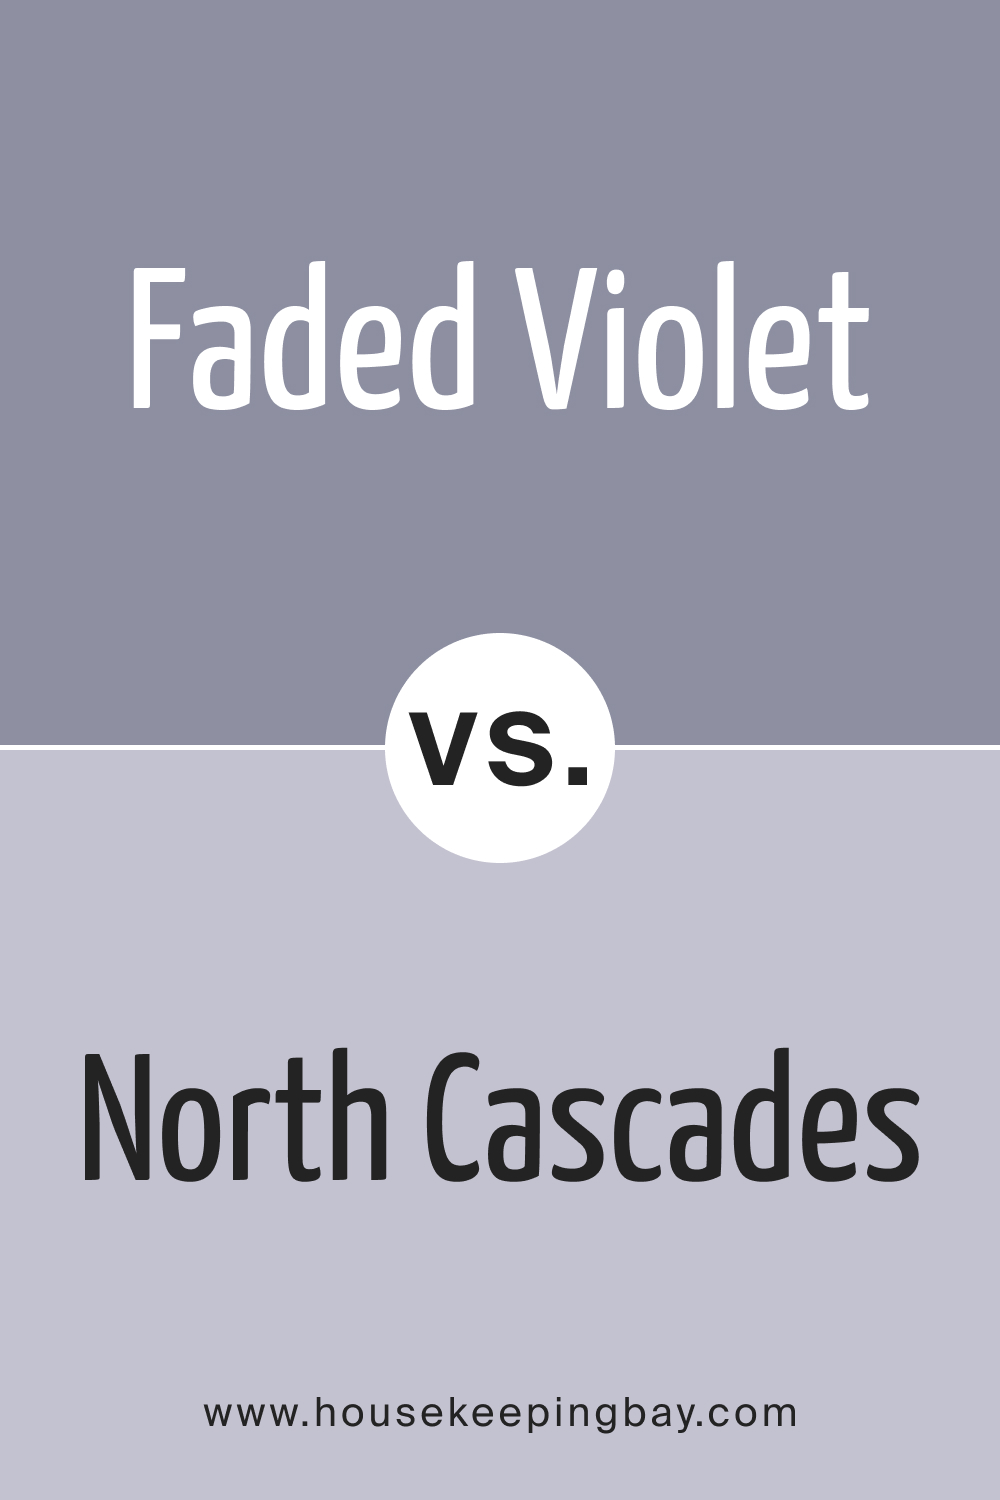 Faded Violet CSP-455 vs. BM 1411 North Cascades